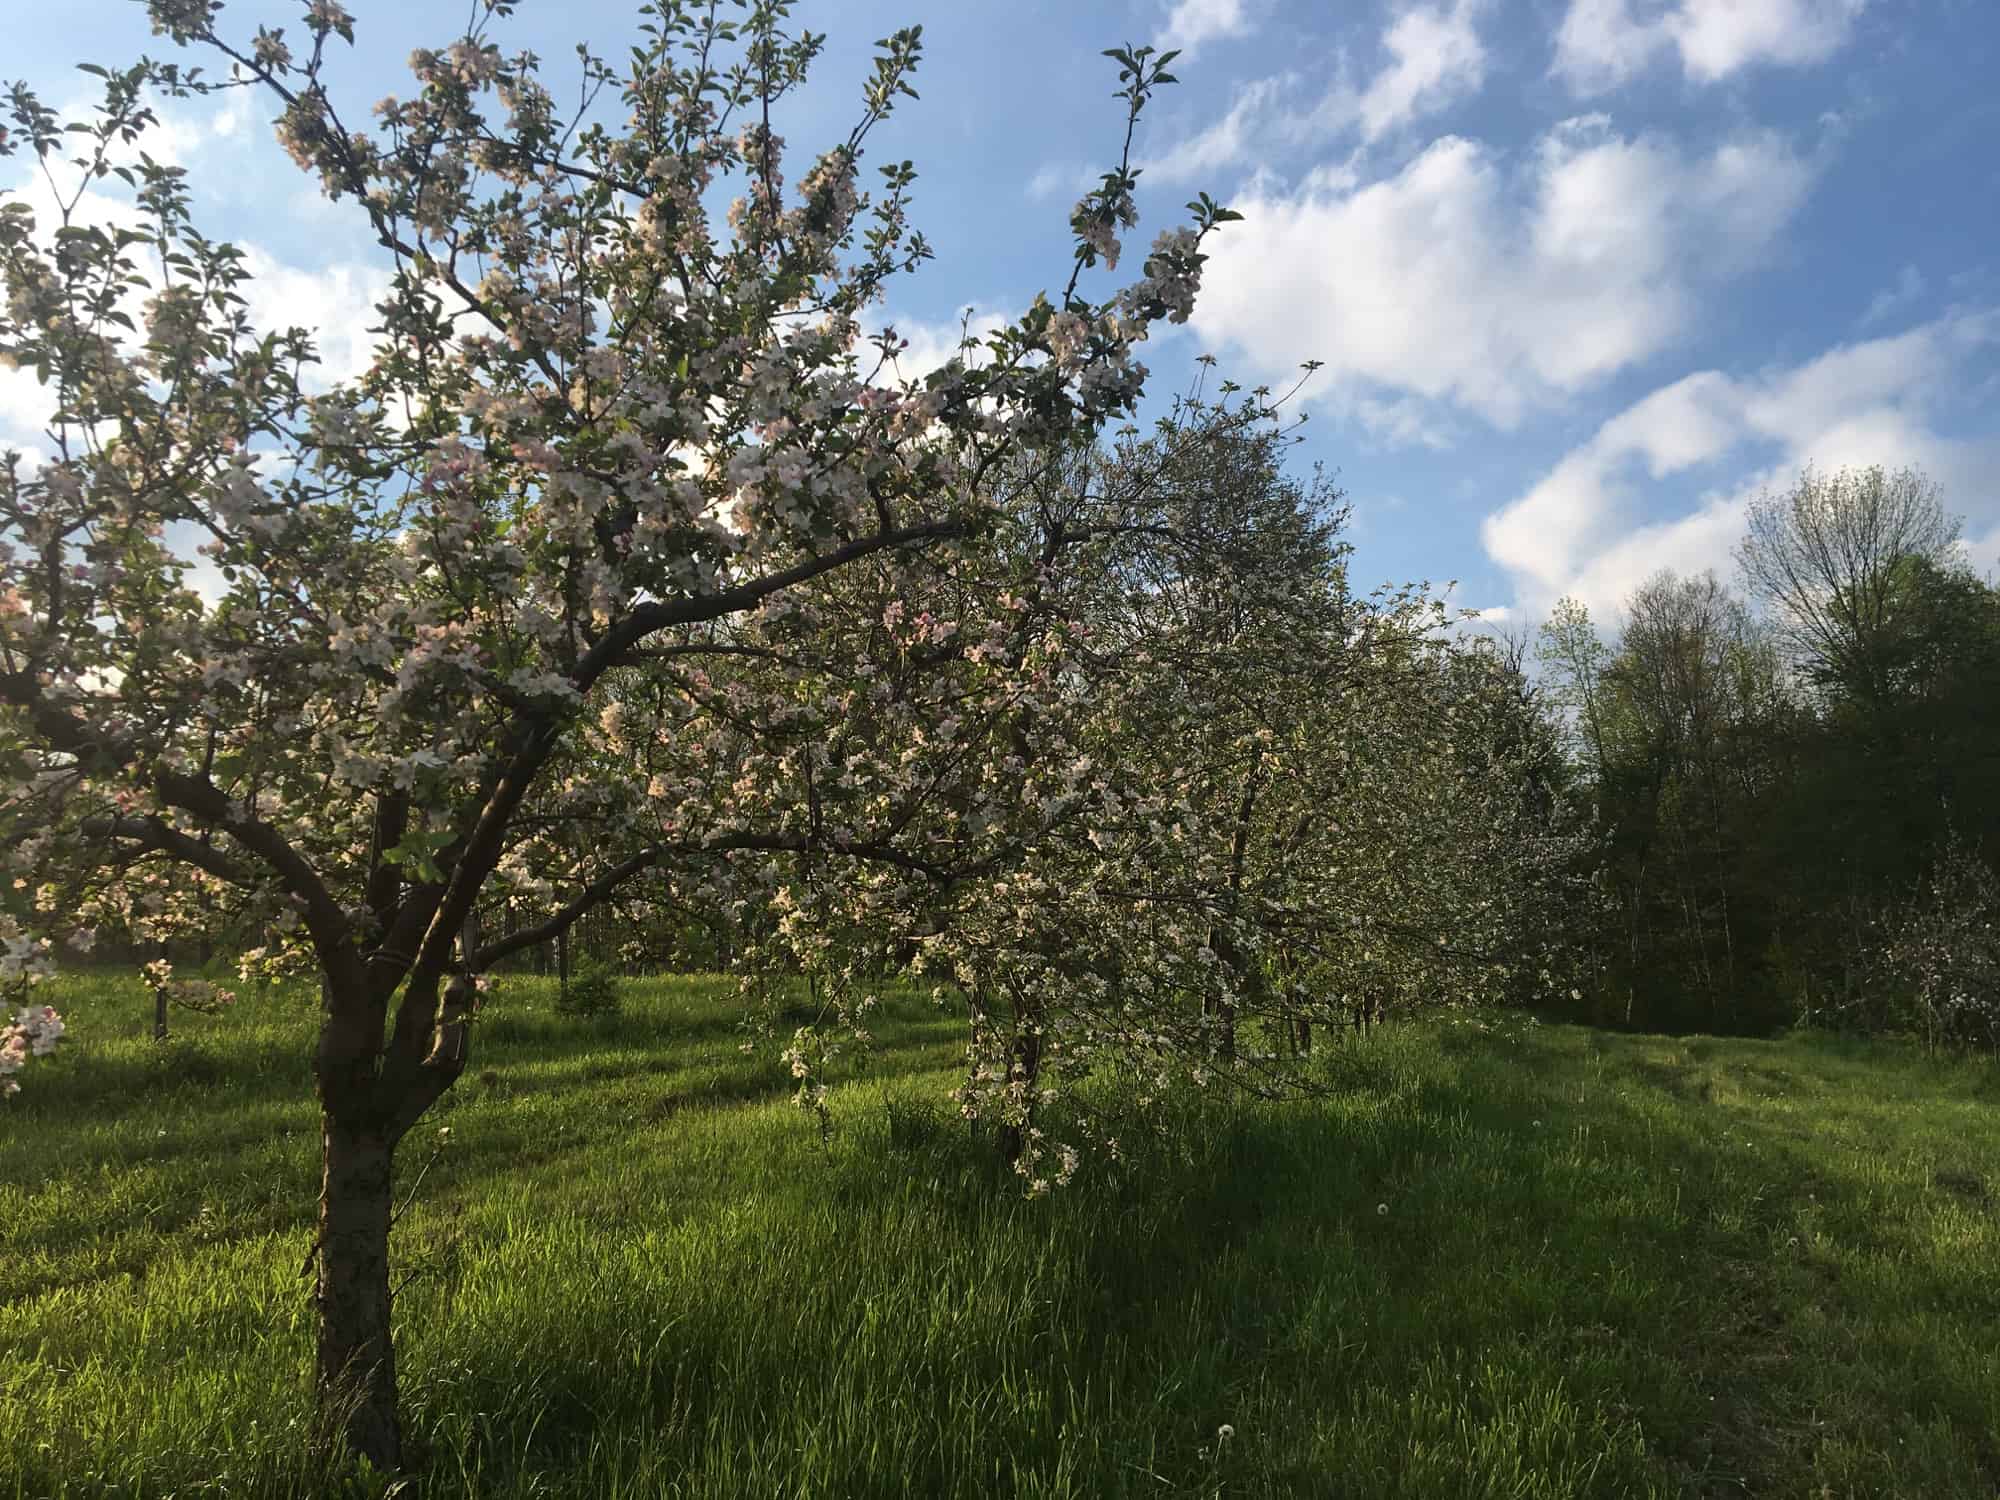 Blooming Apples